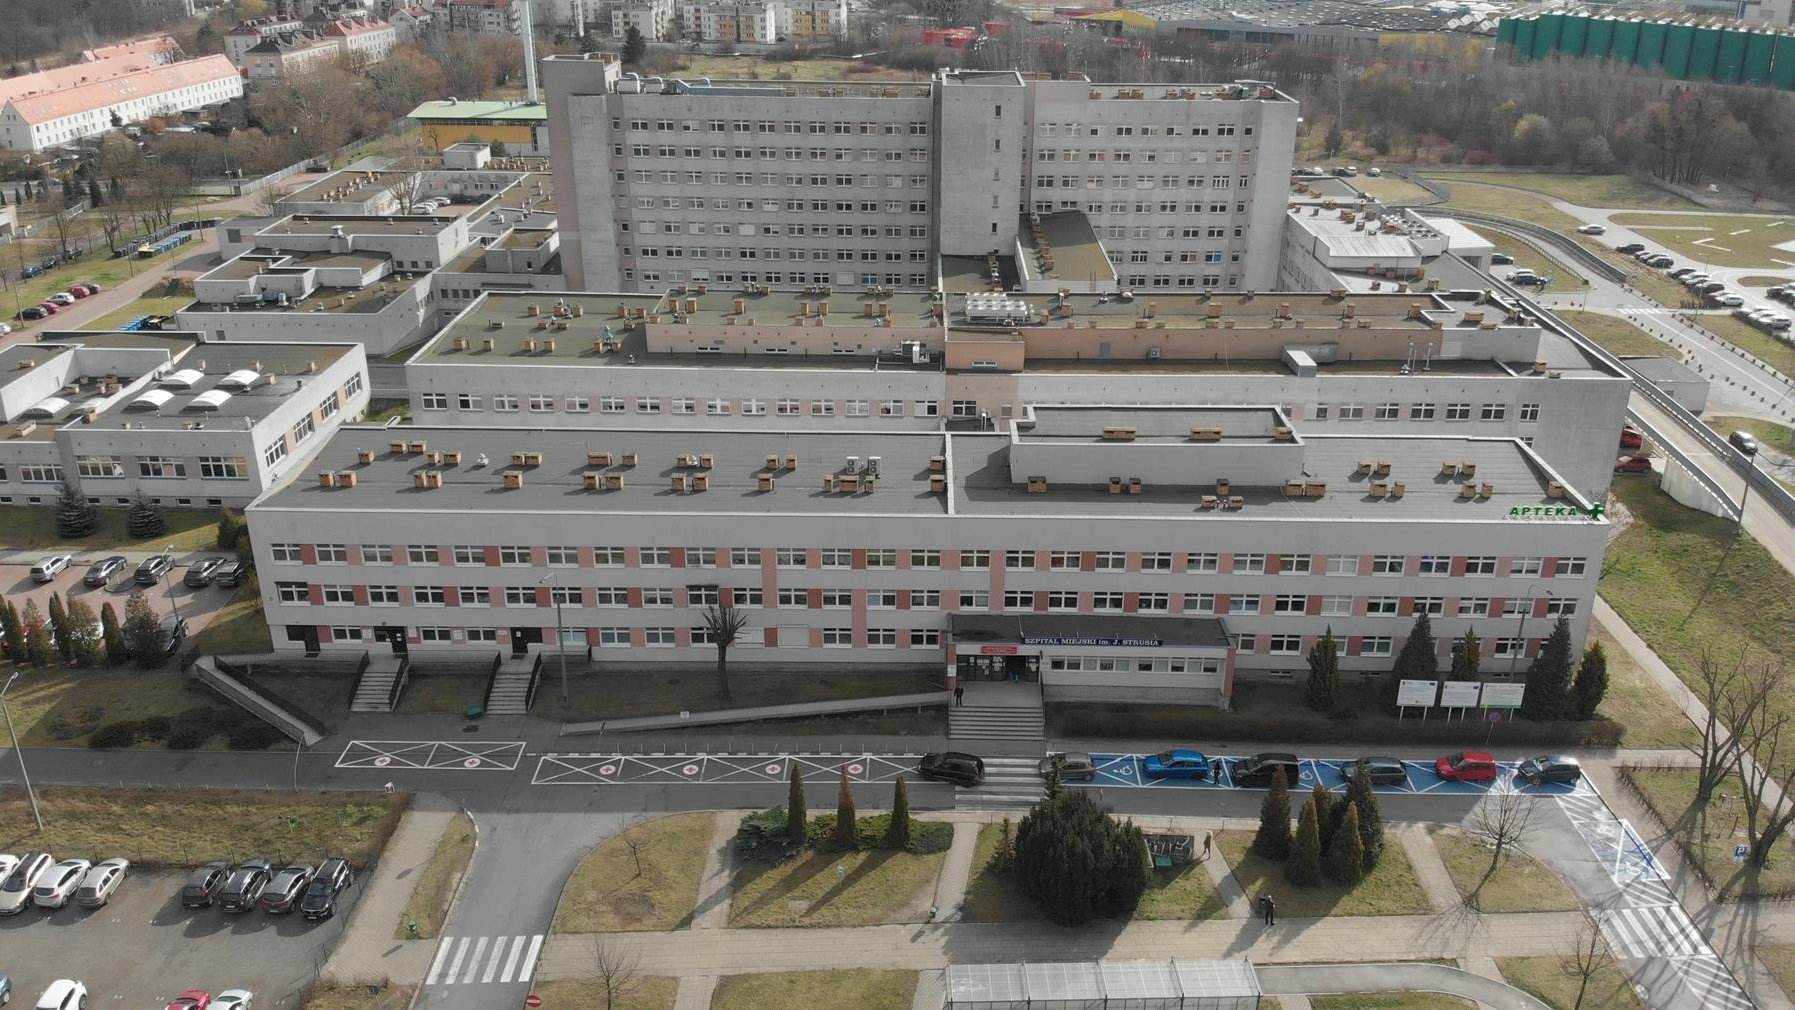 Widok z lotu ptaka na budynek szpitala im. J. Strusia, na pierwszym planie izba przyjęć